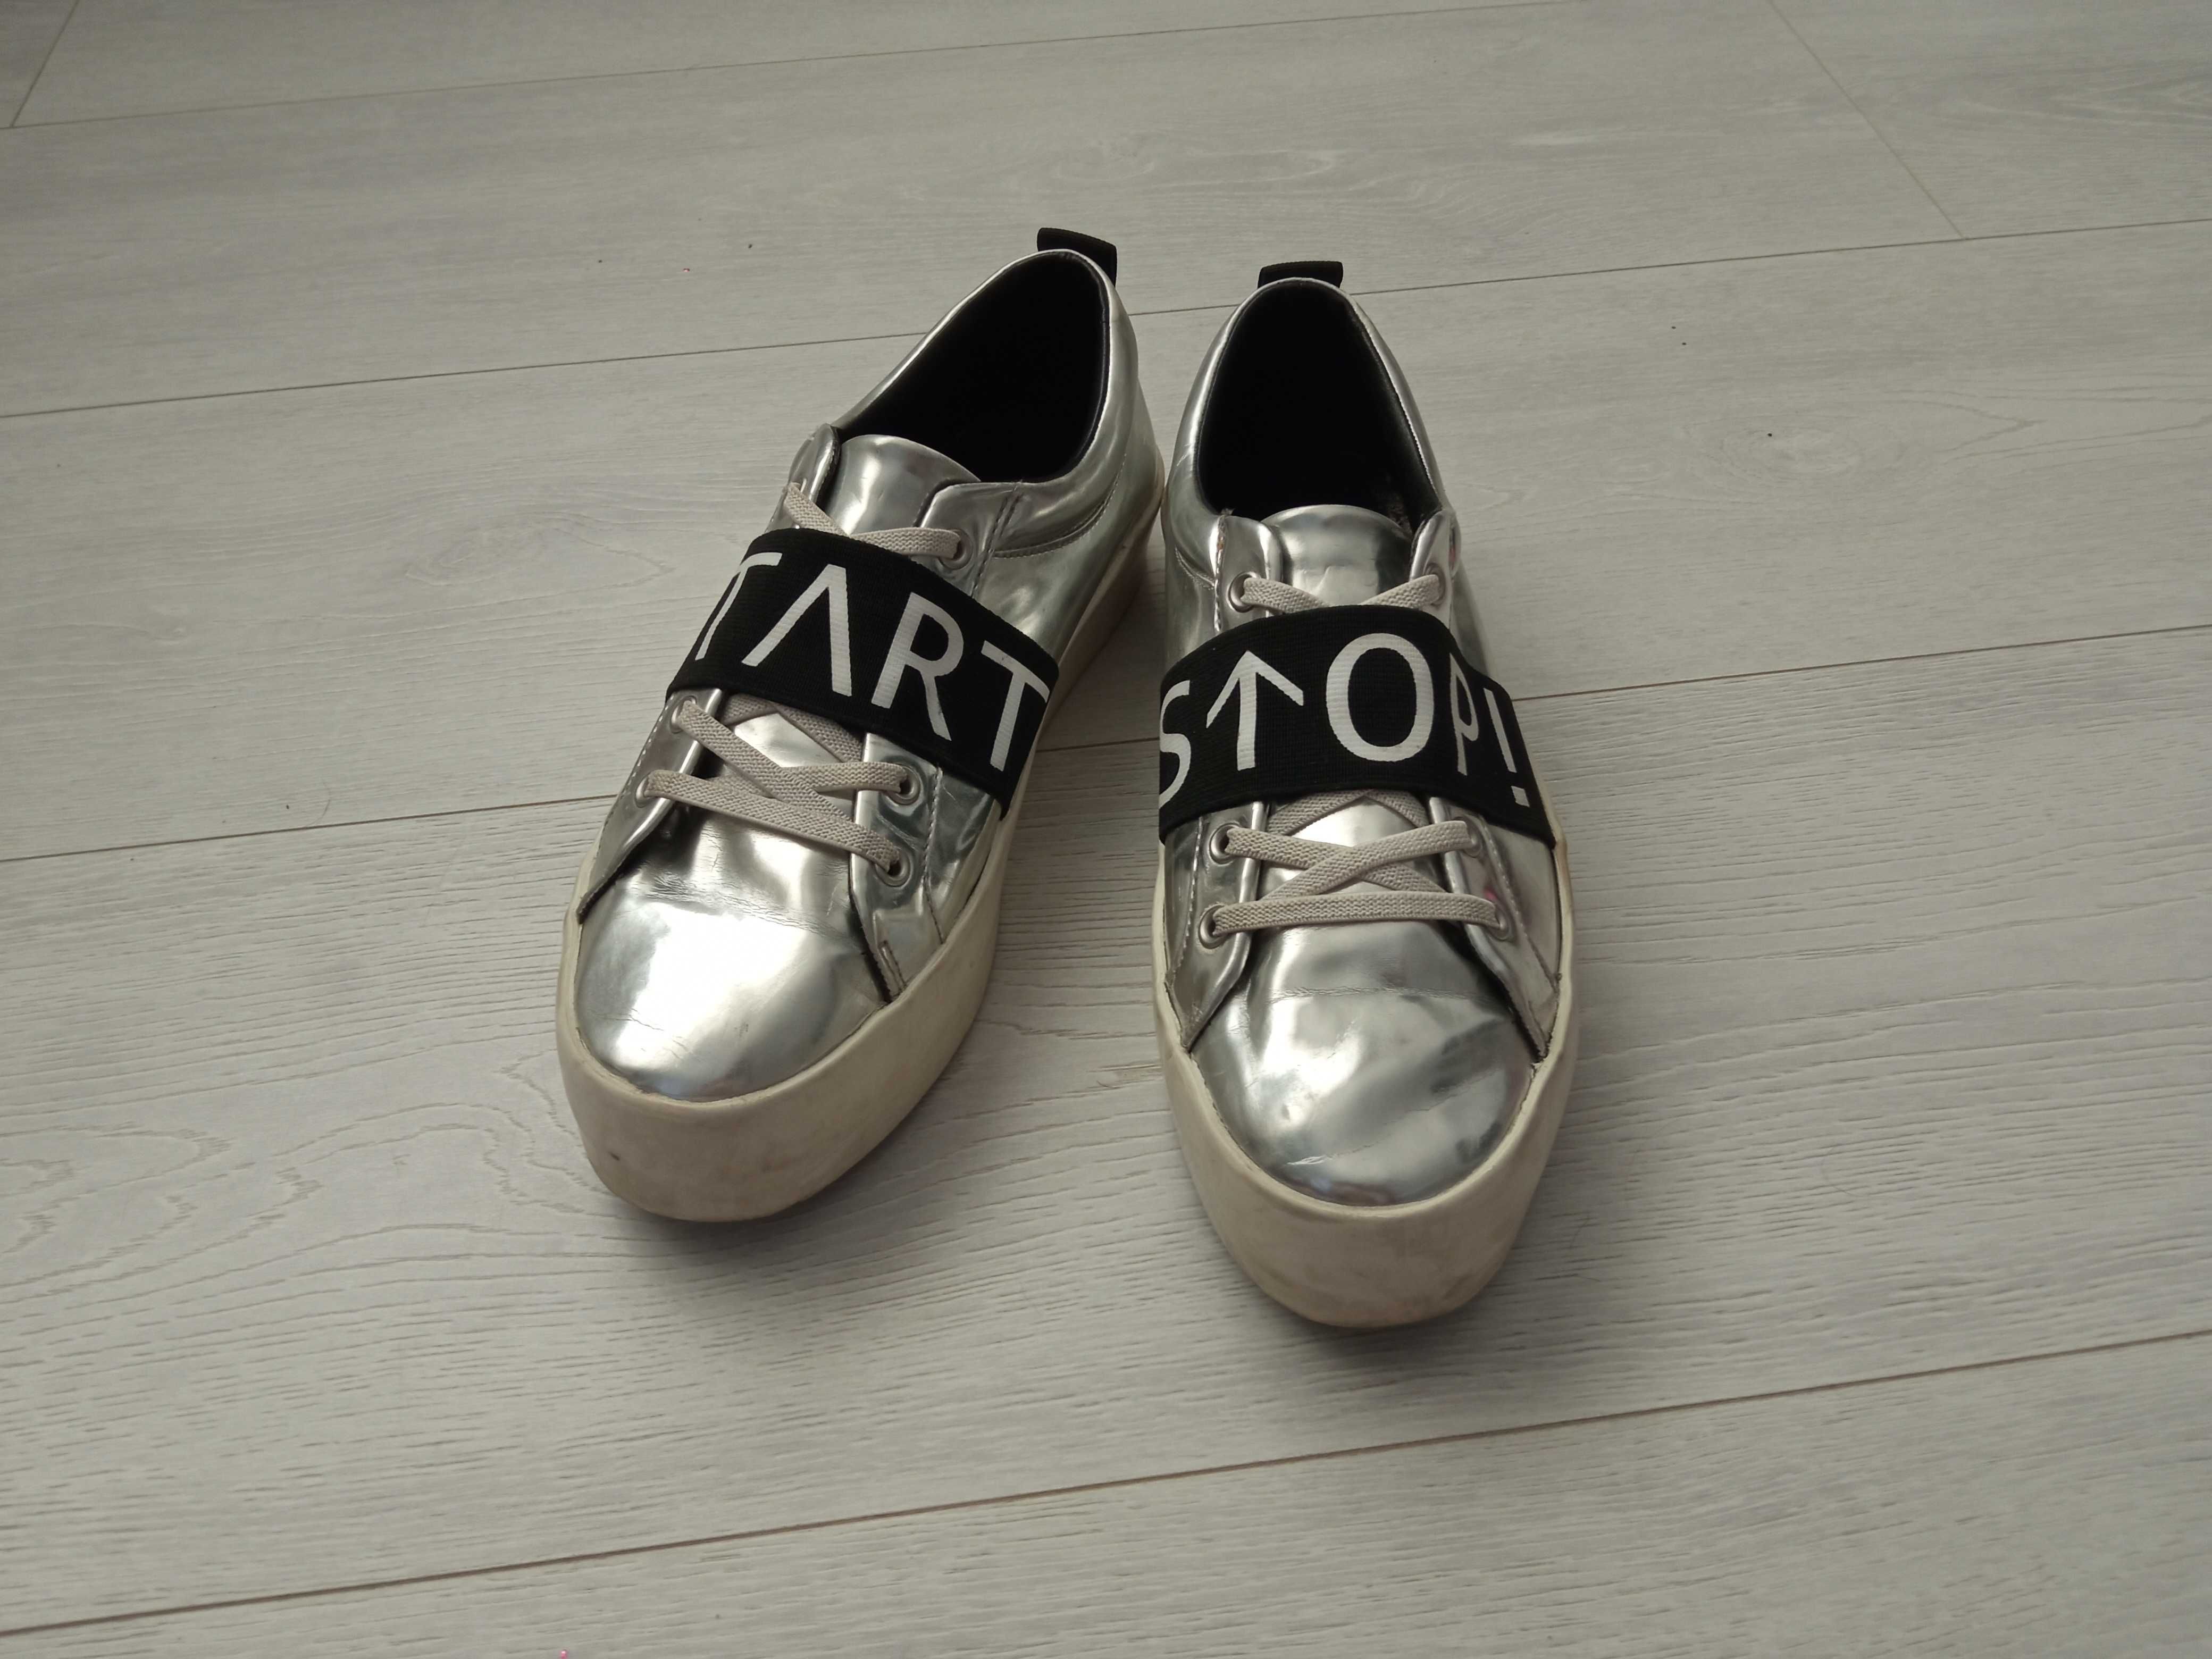 Слипоны кроссовки кеды Zara женские 38р серебро серебряные